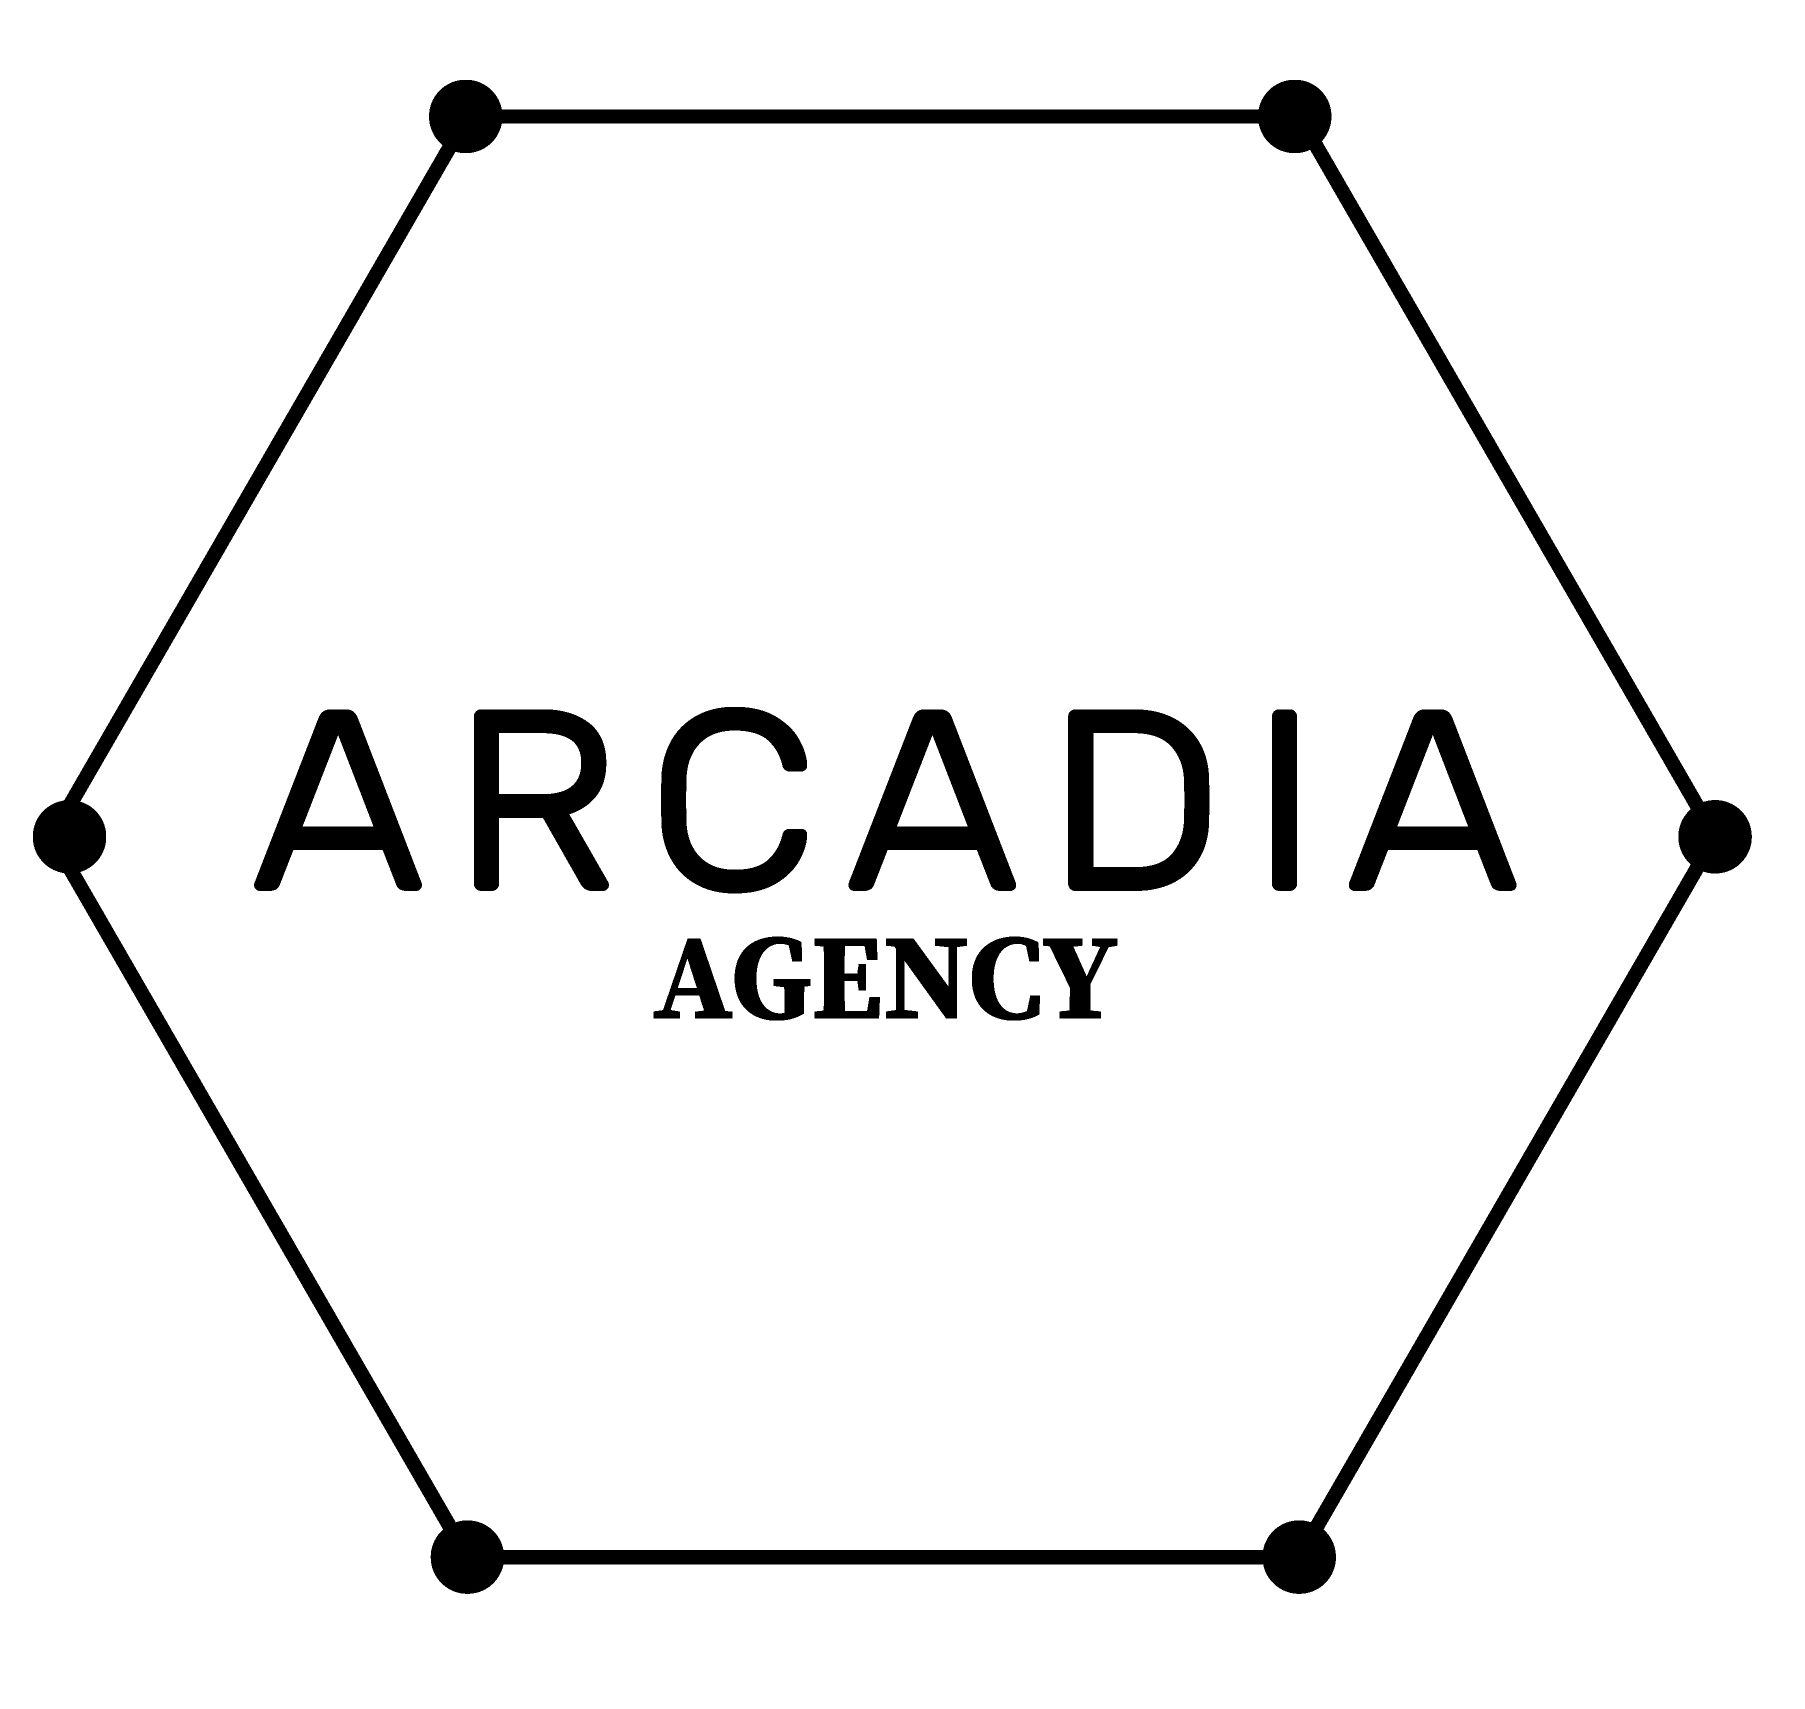 Arcadia Agency – A Creative Event Agency